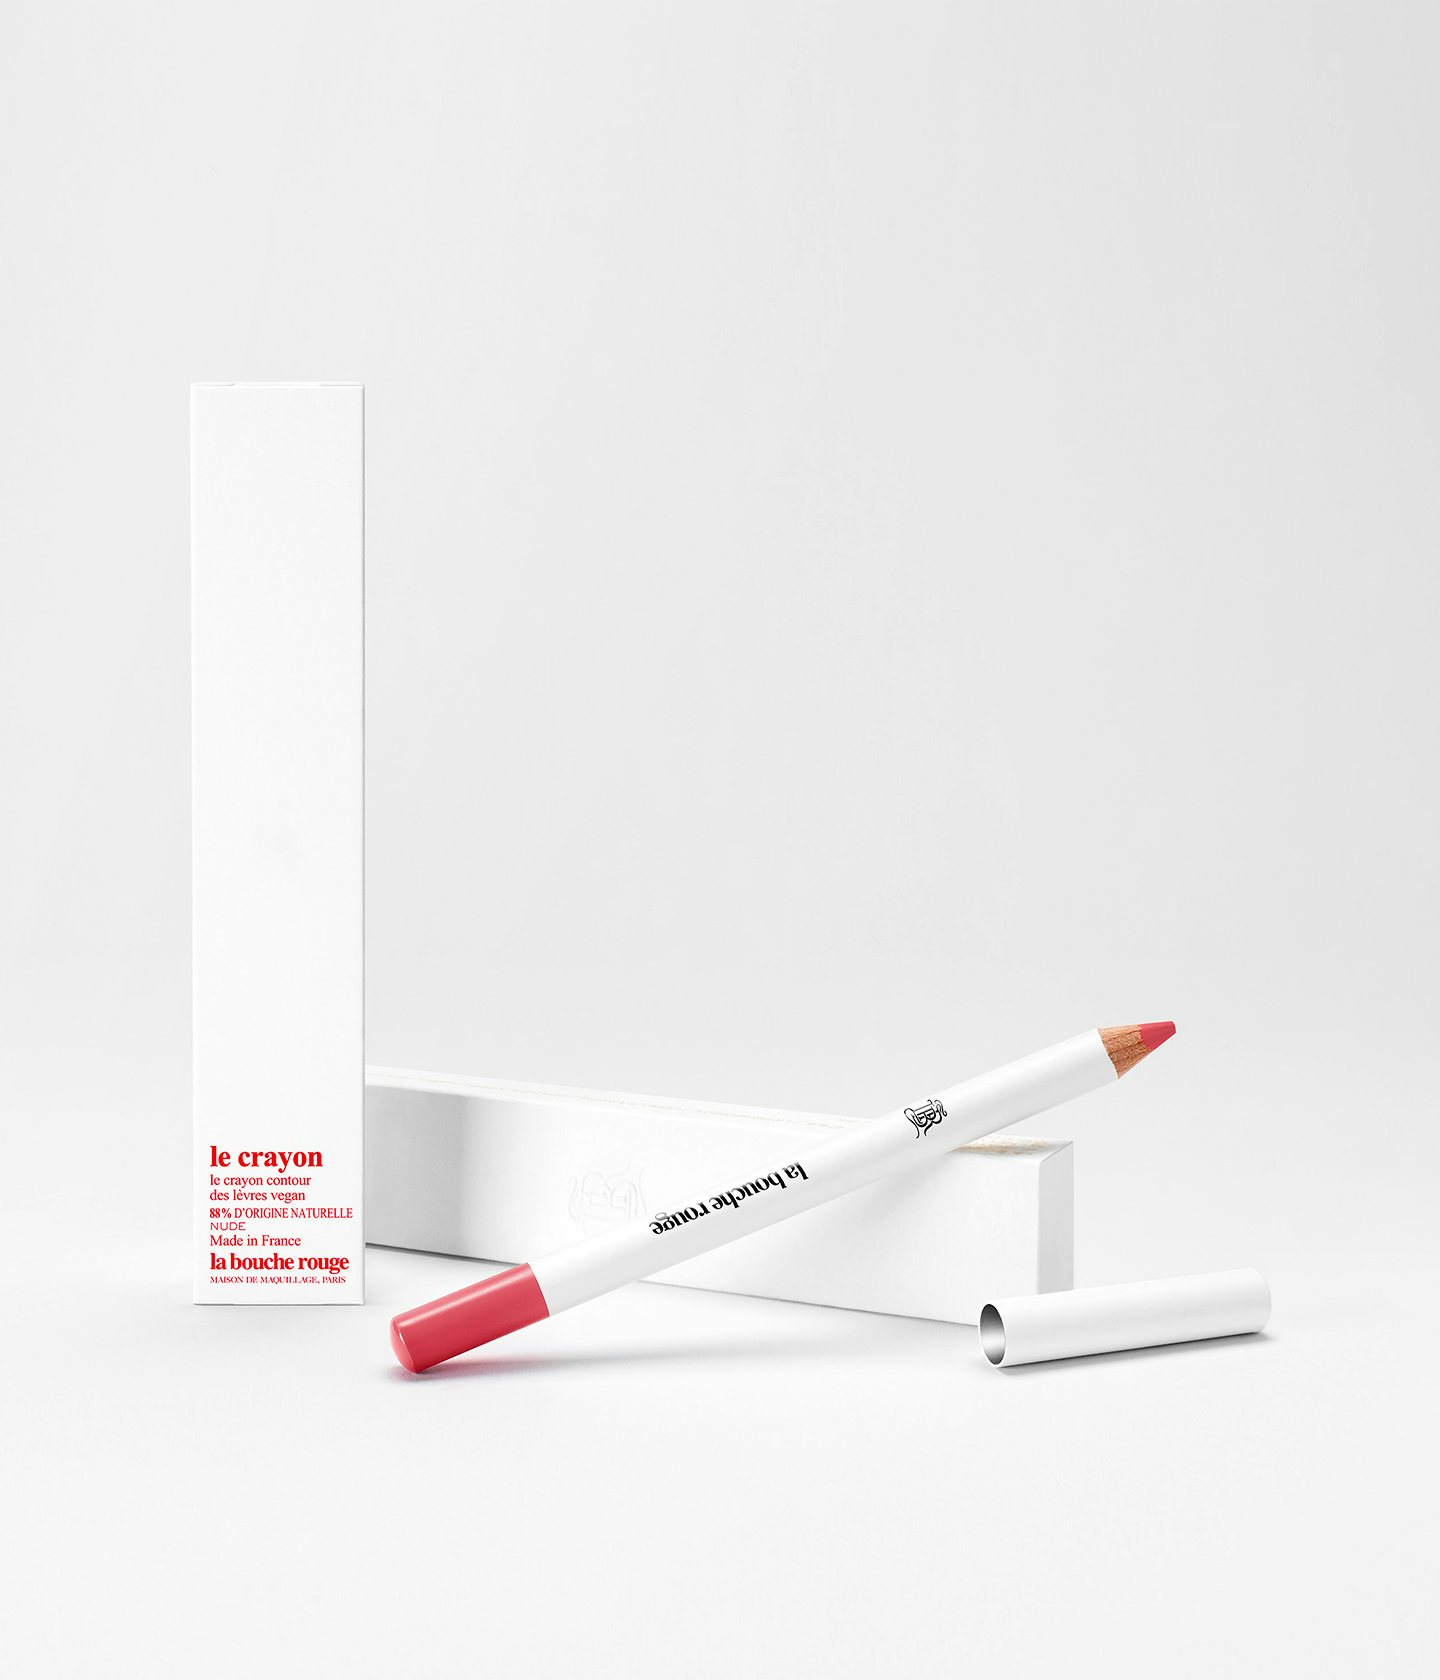 La bouche rouge Nude lip pencil with the white box